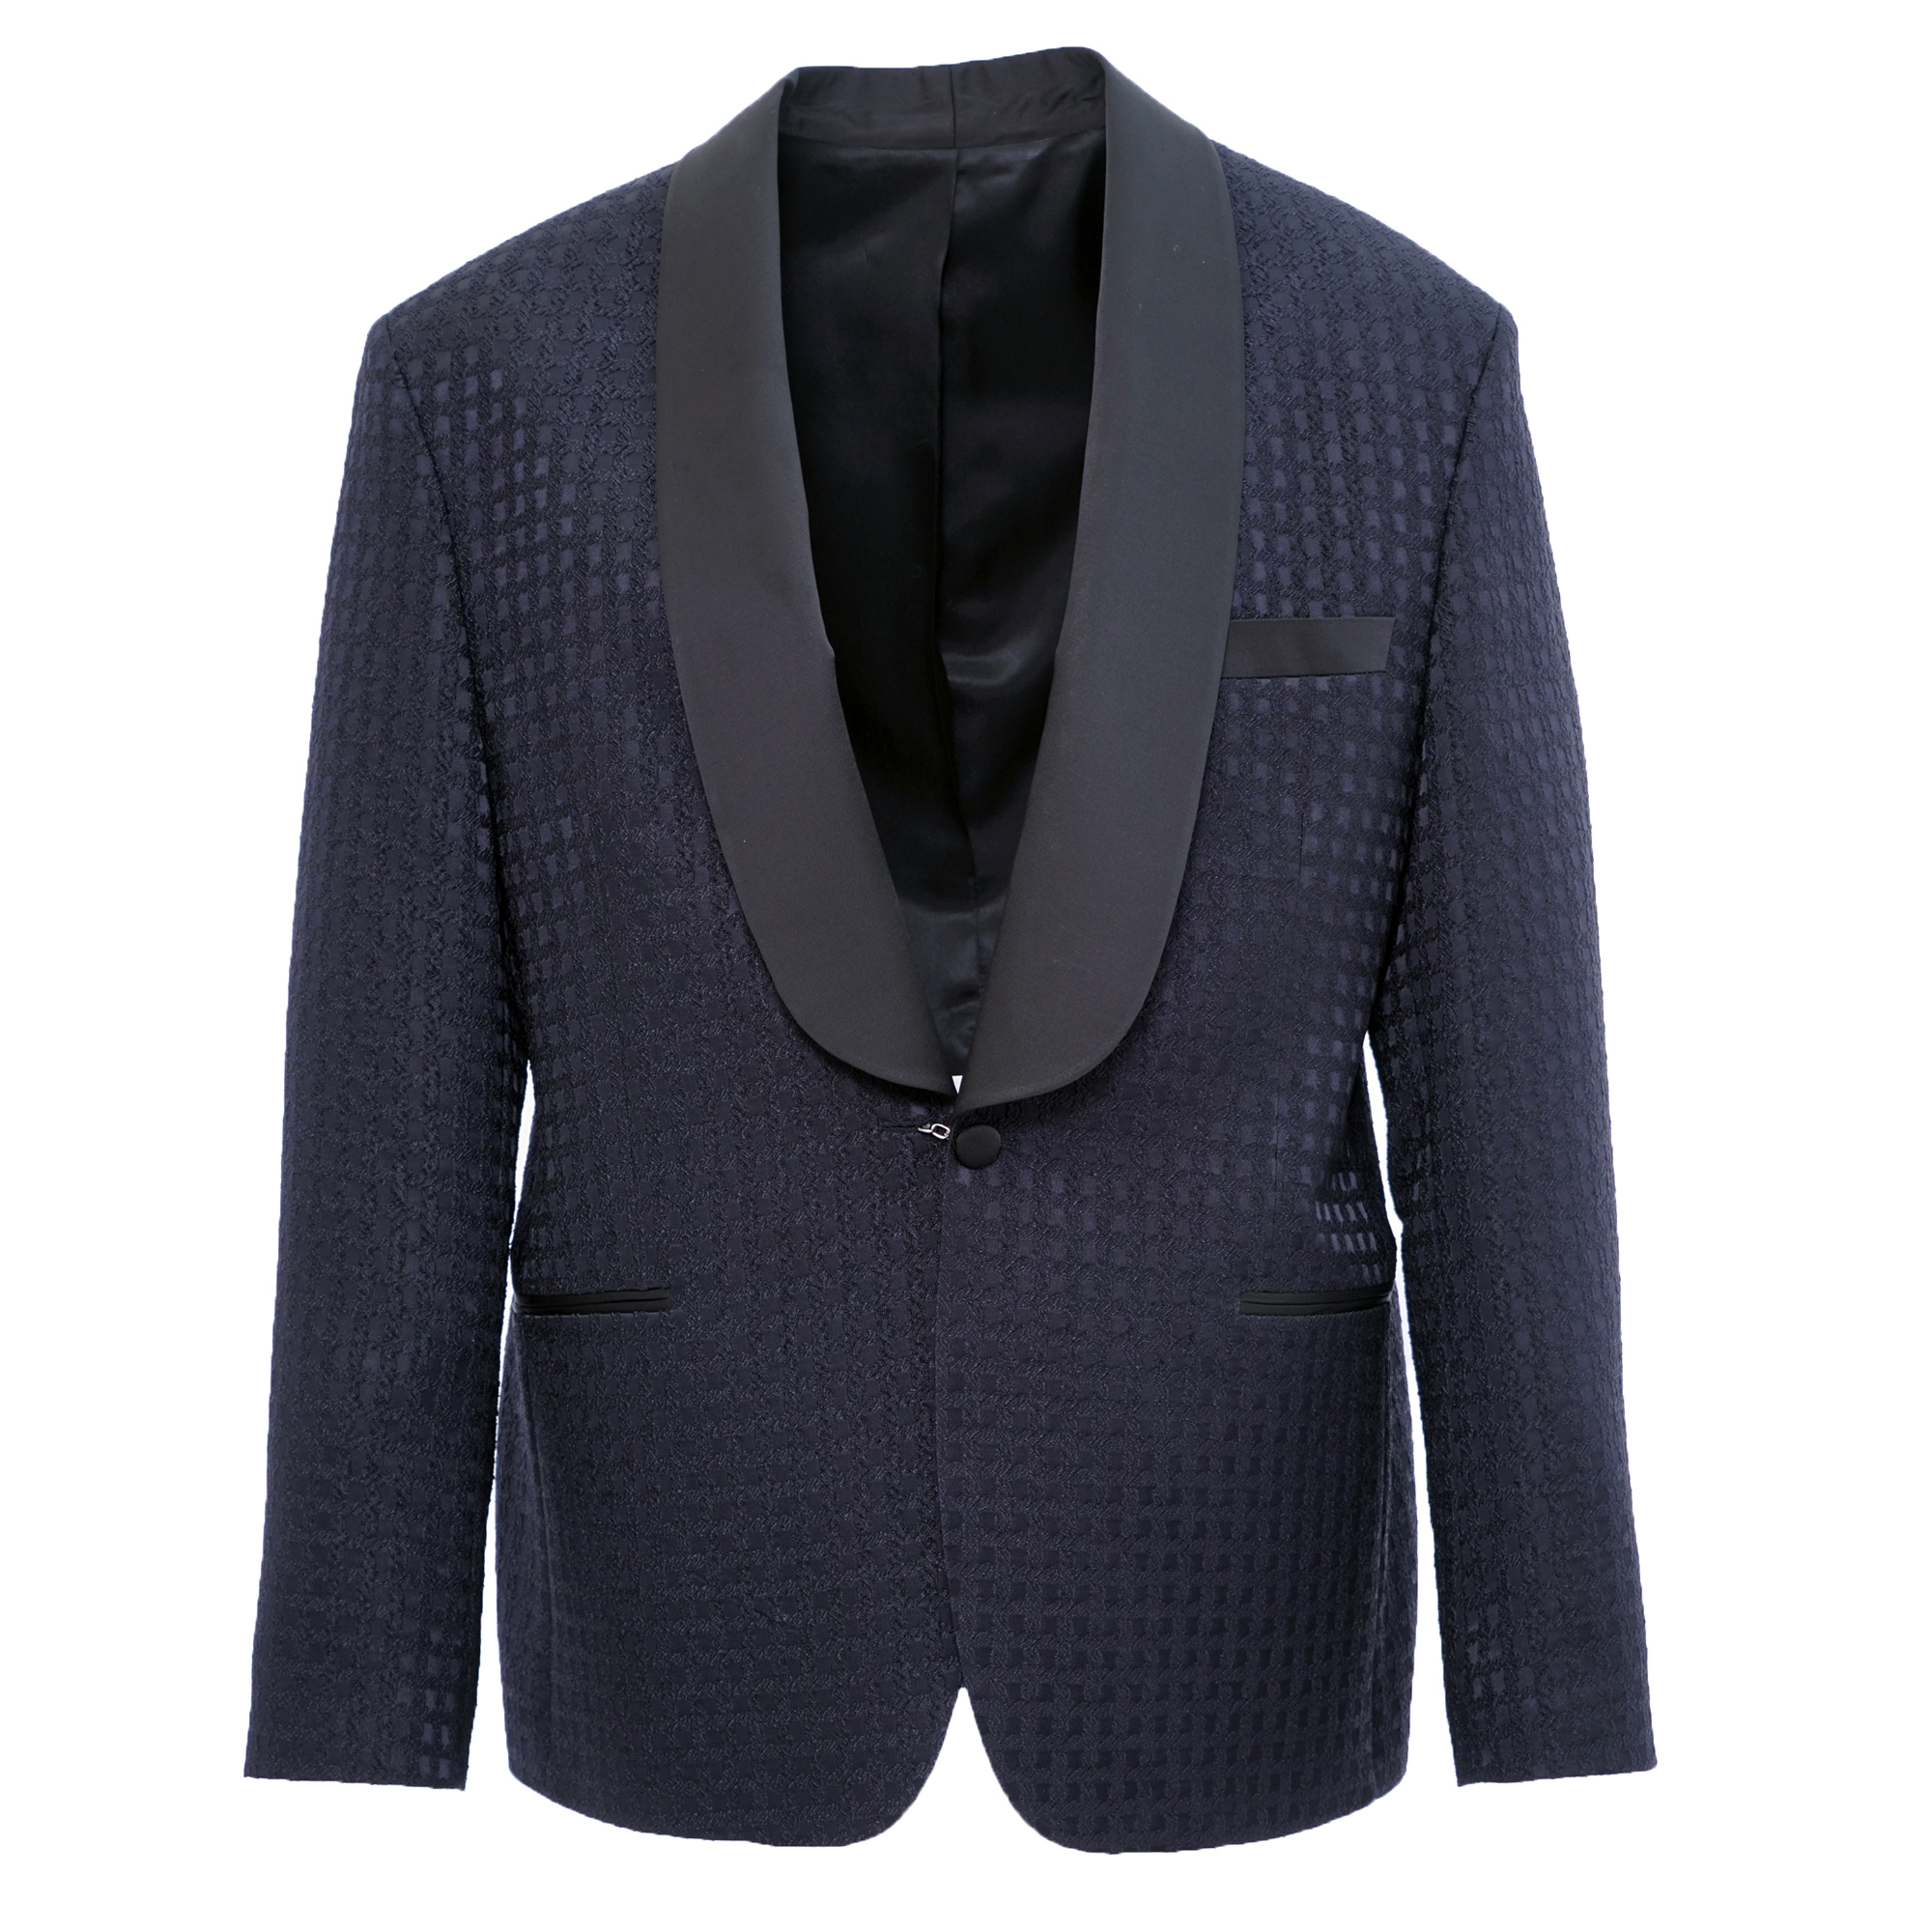 Blue Square Tuxedo Jacket - Esclot Tailoring London